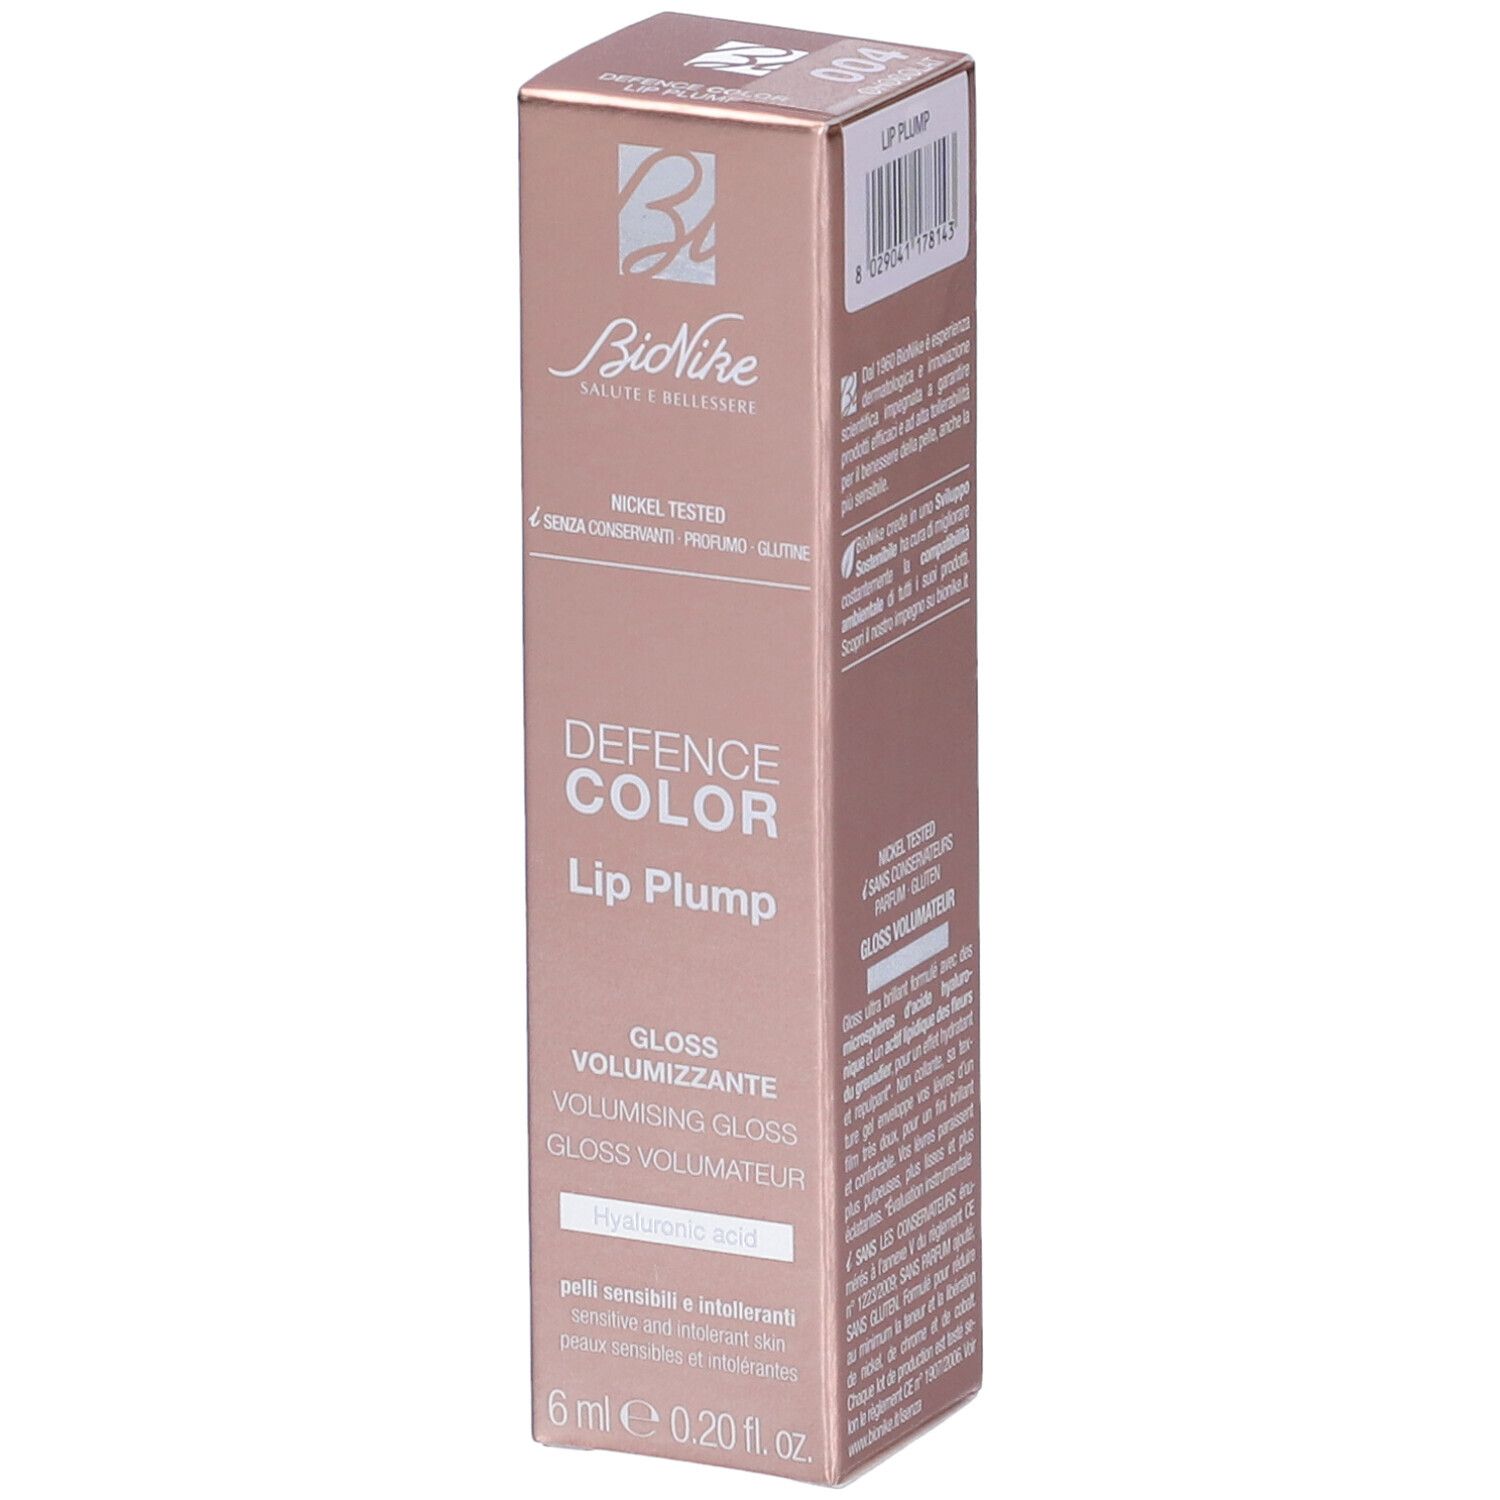 Bionike Defence Color Lip Plump Gloss Volumizzante Colore 004 Chocolat